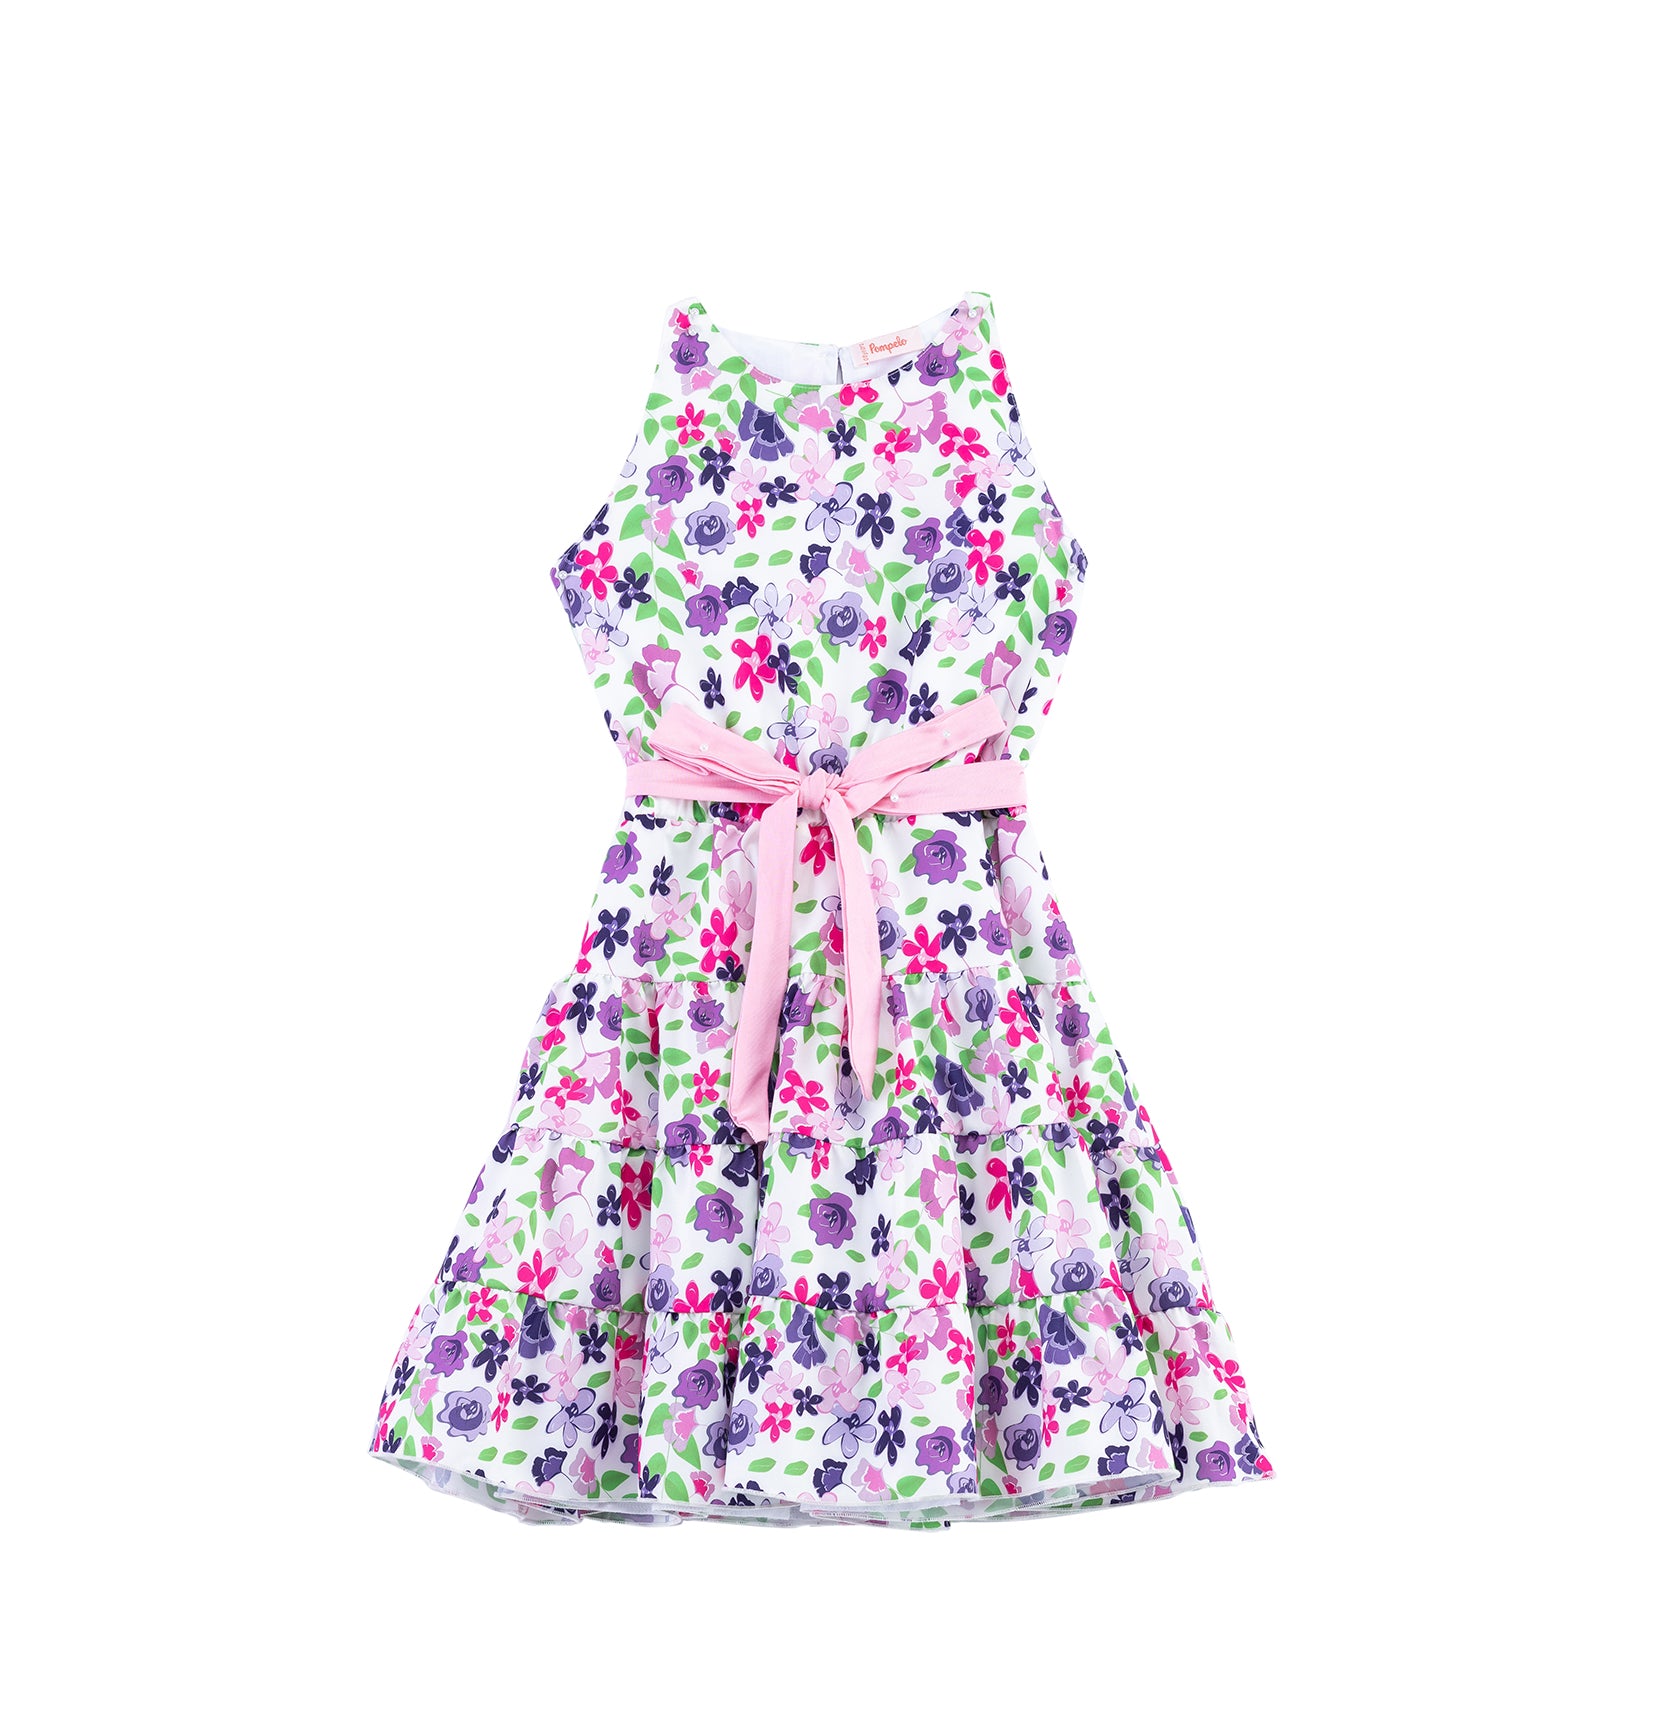 Fluerie patterned sleeveless summer dress by Pompelo